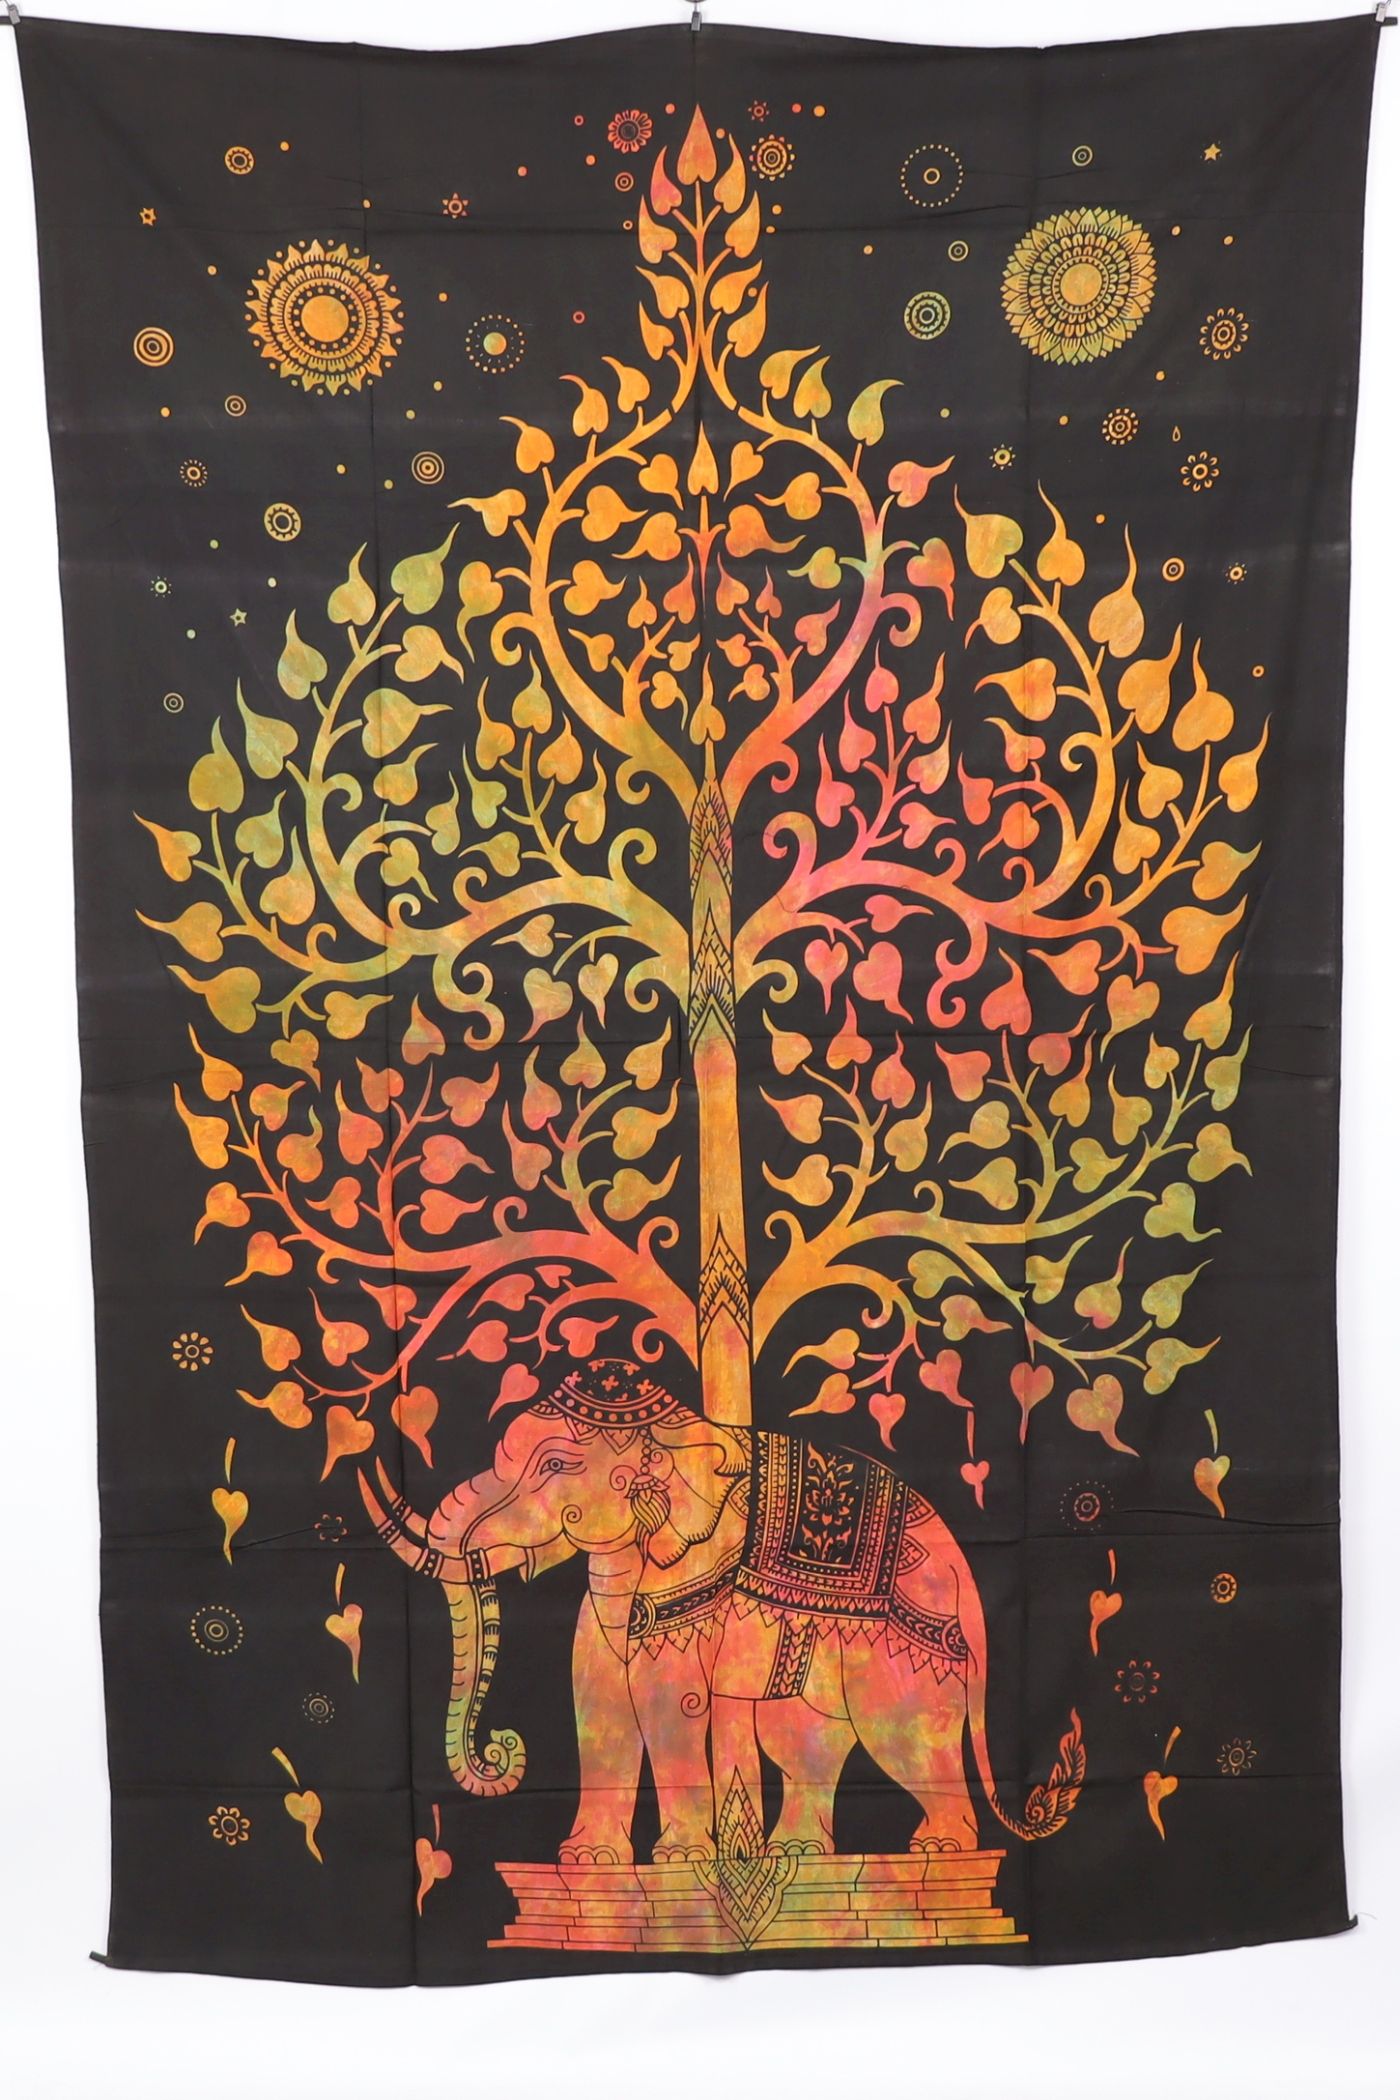 Wandtuch XL 130x210 - Baum und Elefant - 100% Baumwolle - detailreicher indischer Druck - dekoratives Tuch, Wandbild, Tagesdecke, Bedcover, Vorhang, Picknick-Decke, Strandtuch